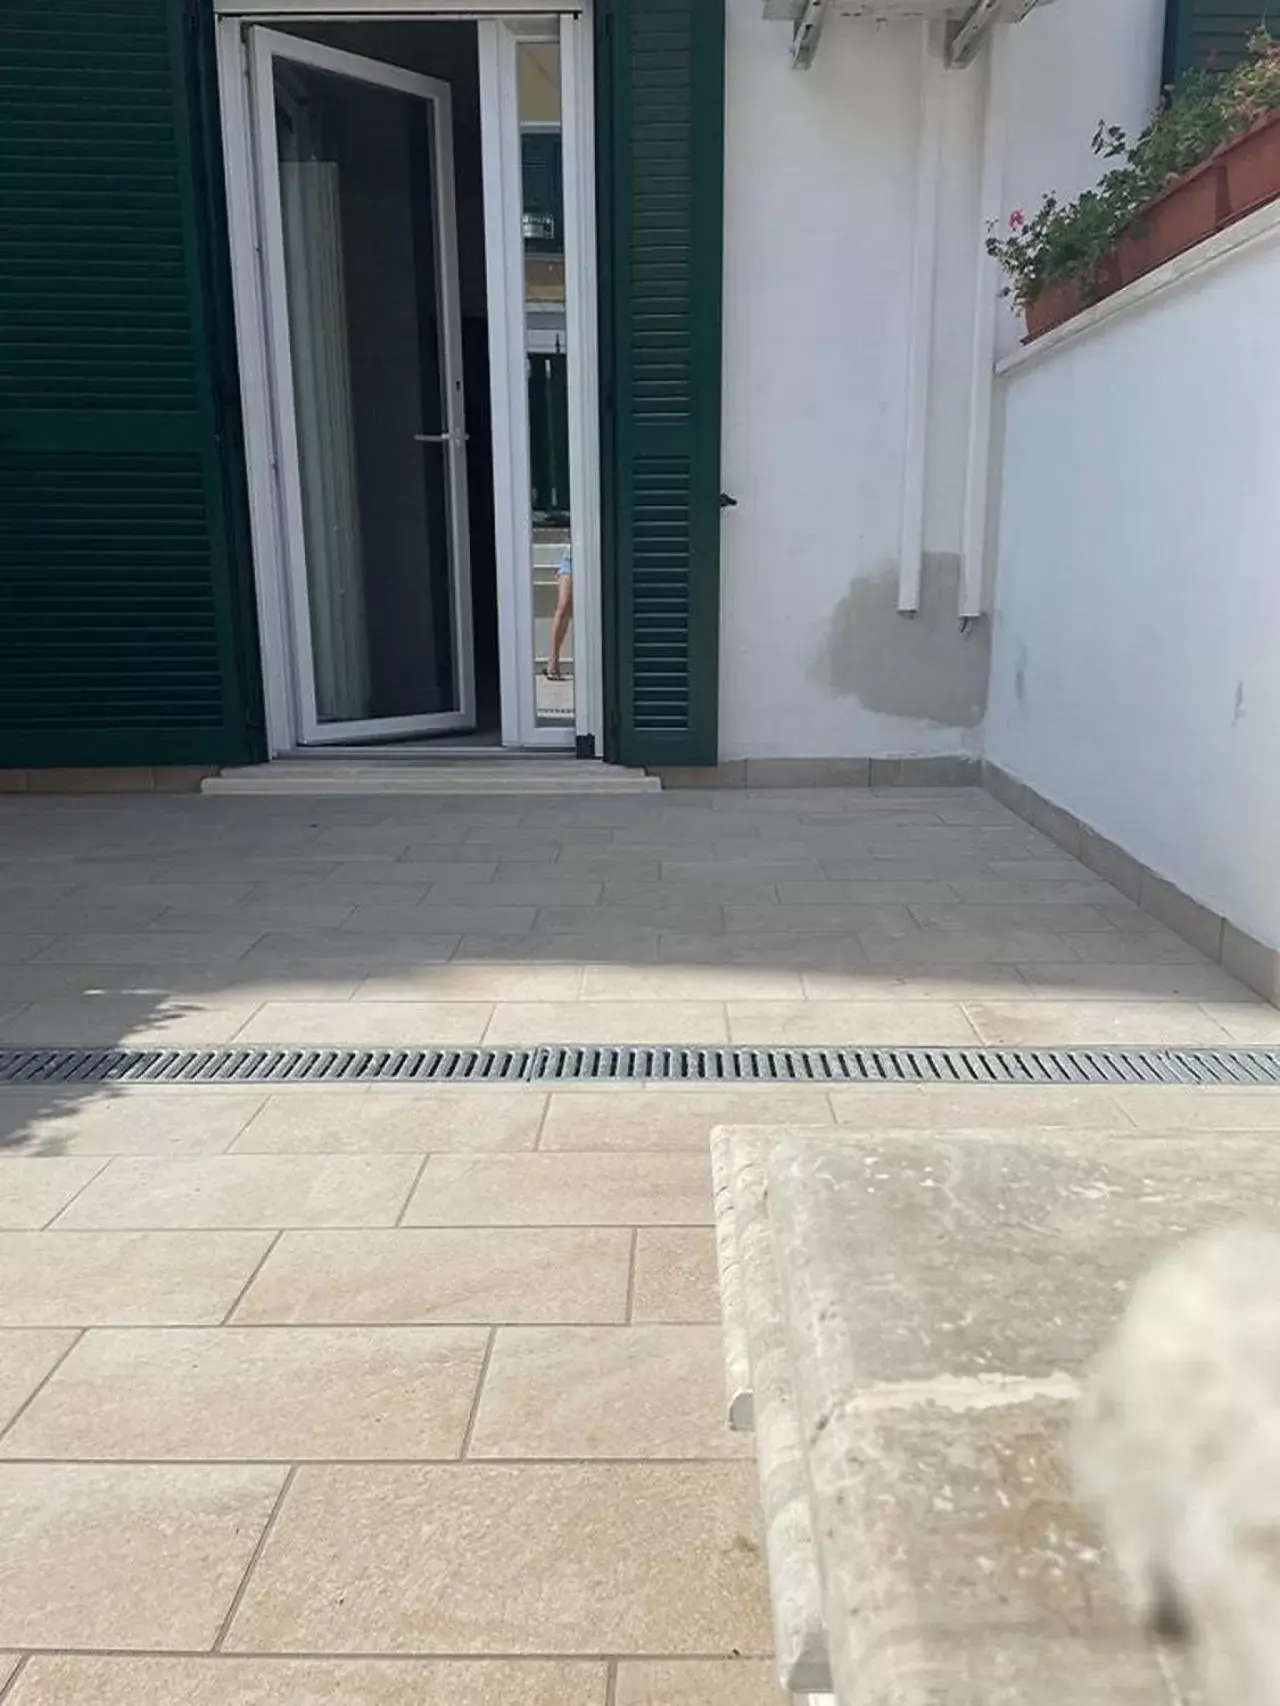 Property building in Riviera Albachiara Anzio B&B